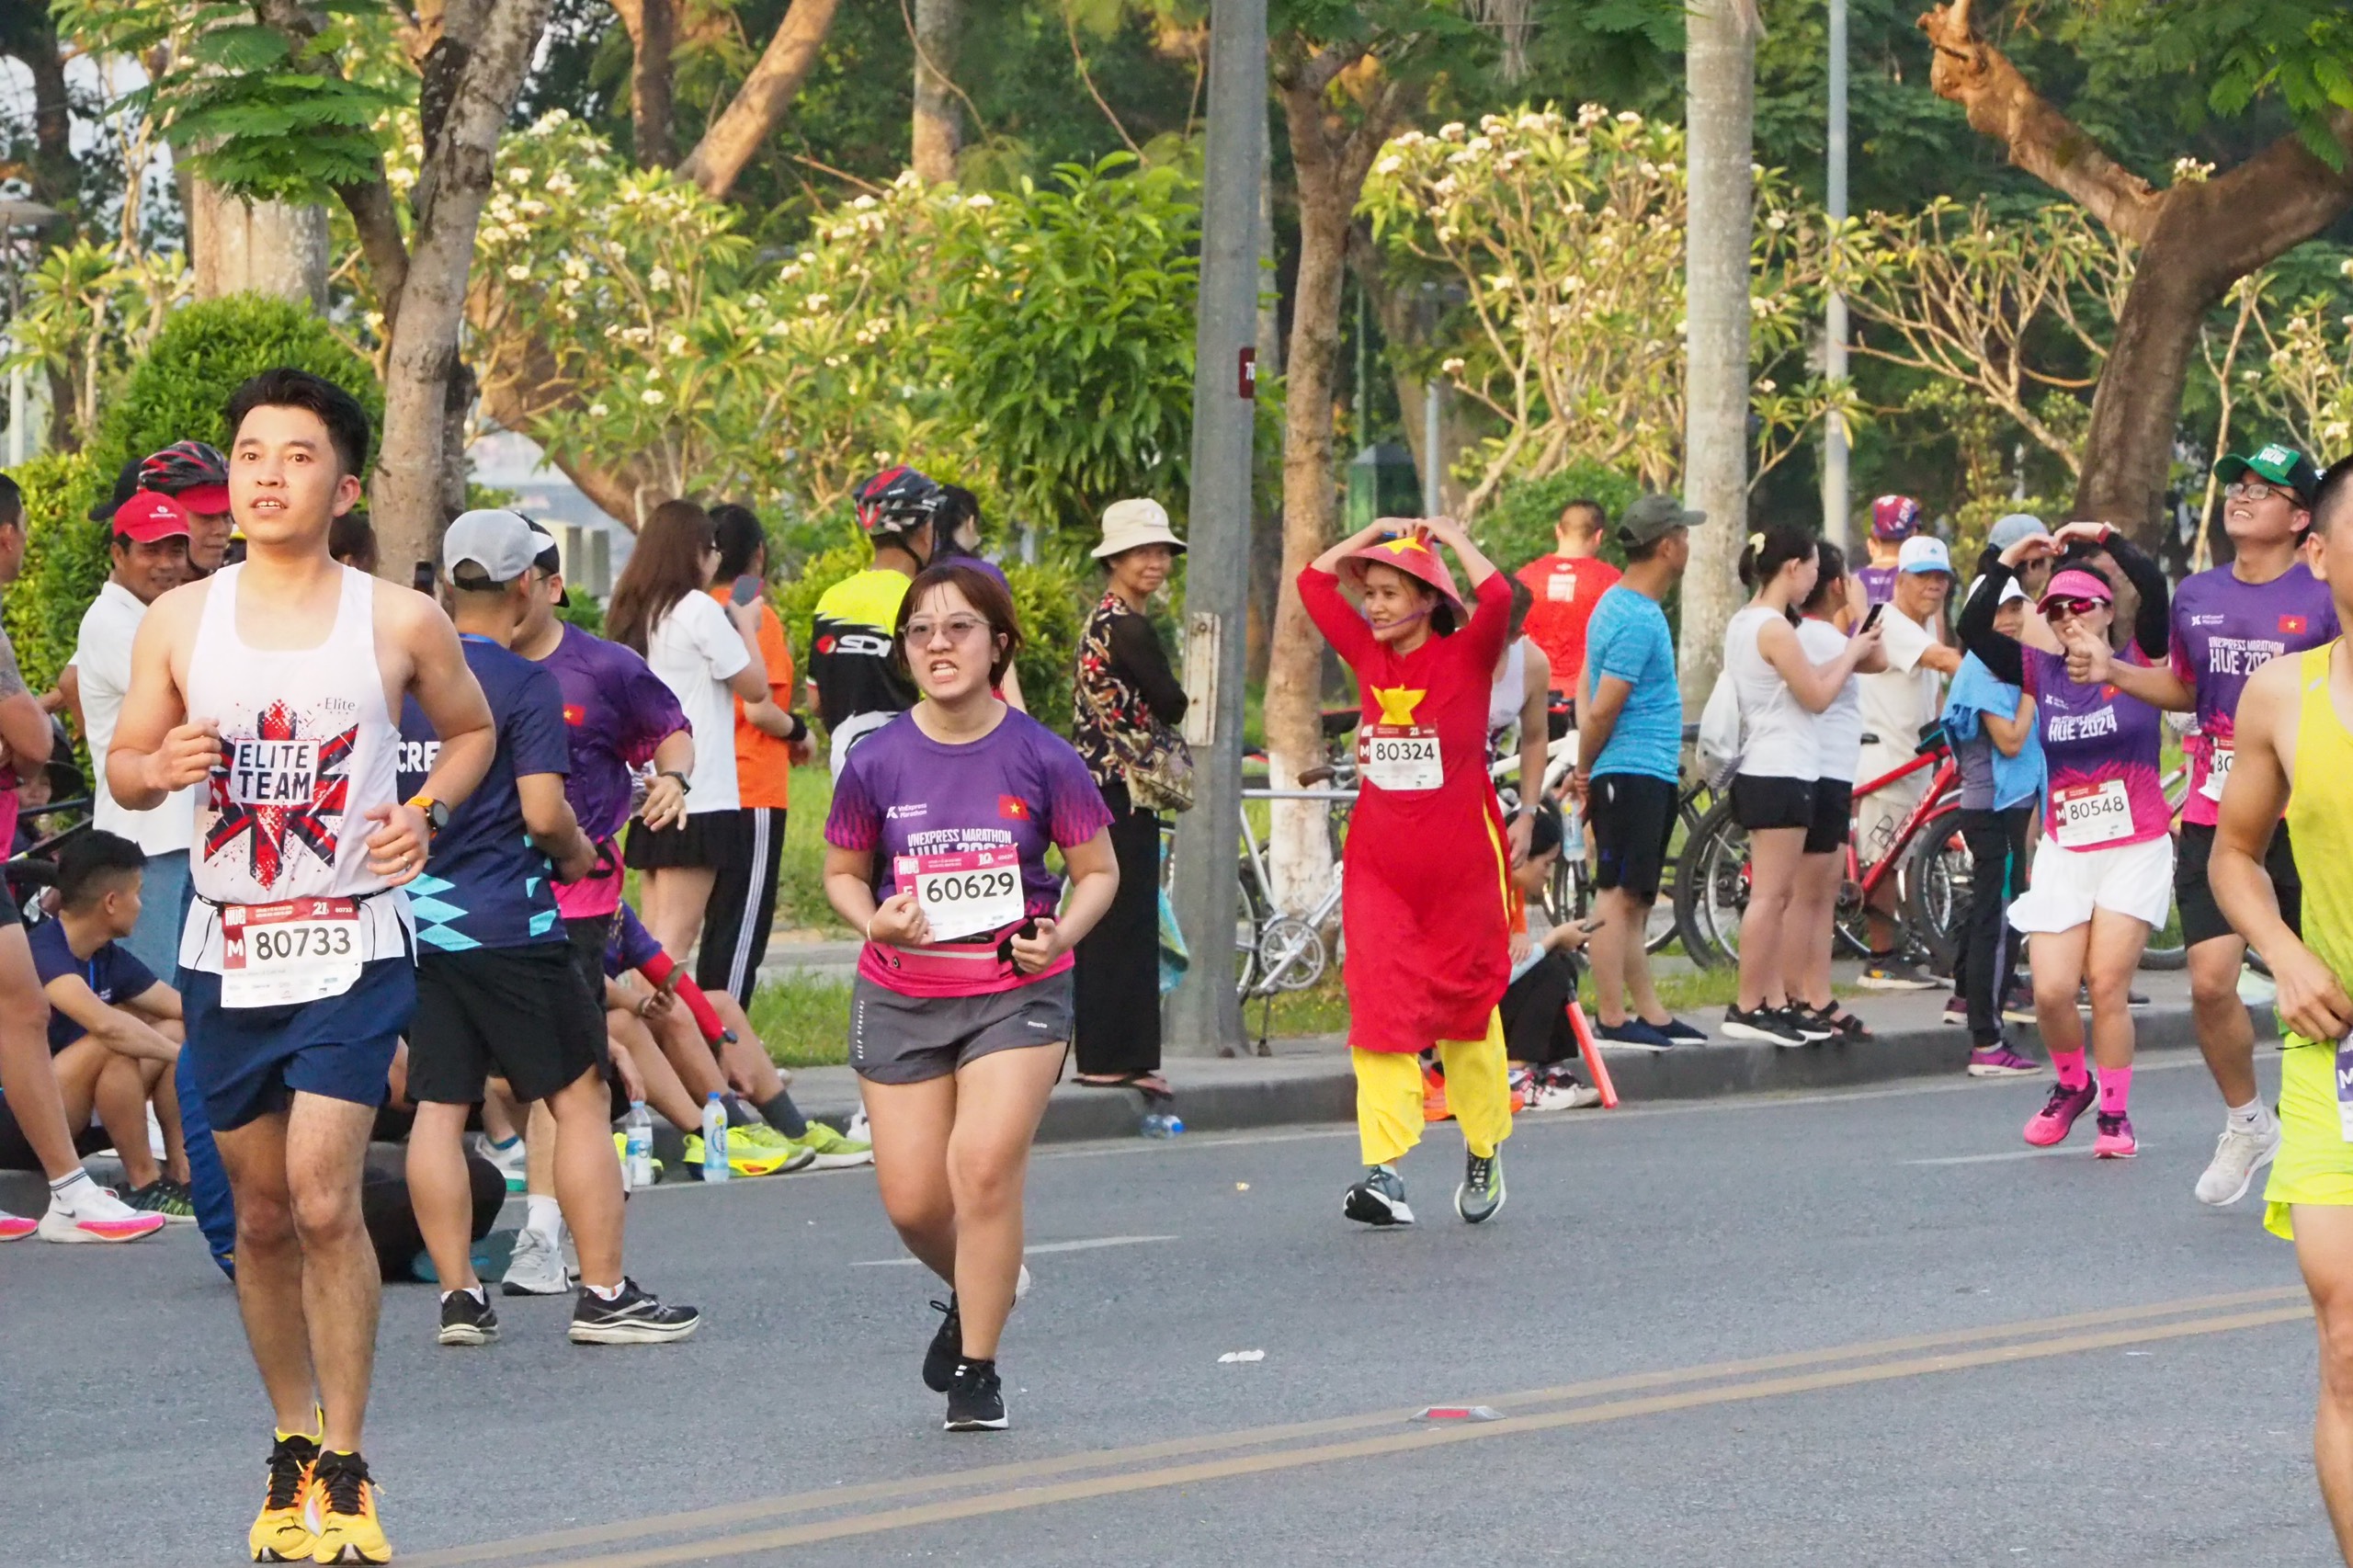 Tranh cãi hình ảnh nữ runner mặc áo dài tham gia giải chạy- Ảnh 2.